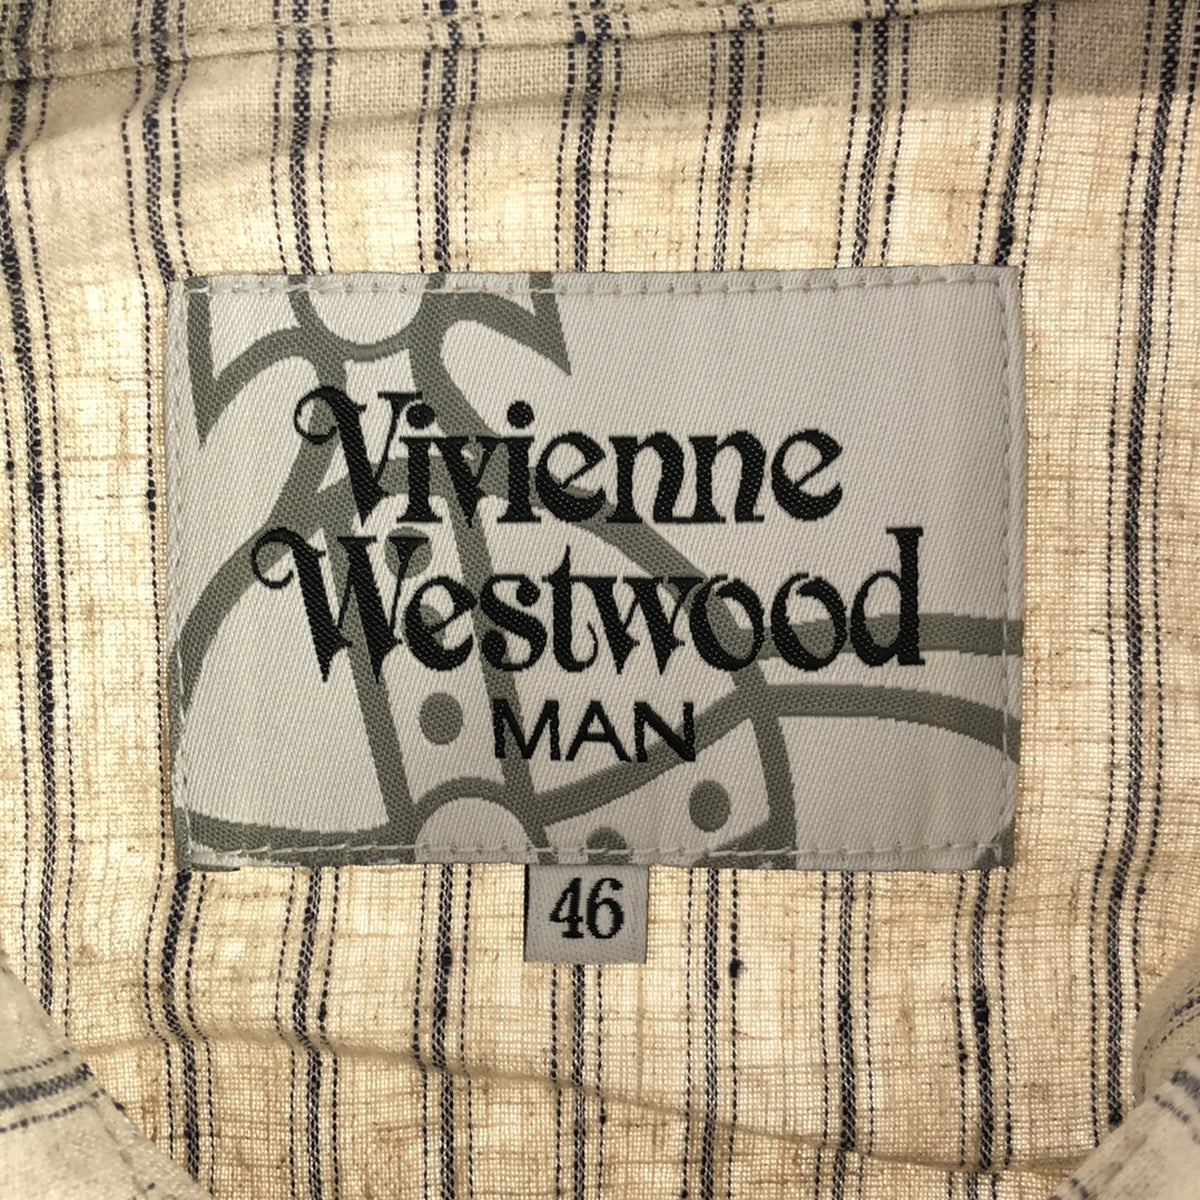 Vivienne Westwood MAN / ヴィヴィアンウエストウッドマン | リネン コットン ストライプジャケット | 42 | メンズ